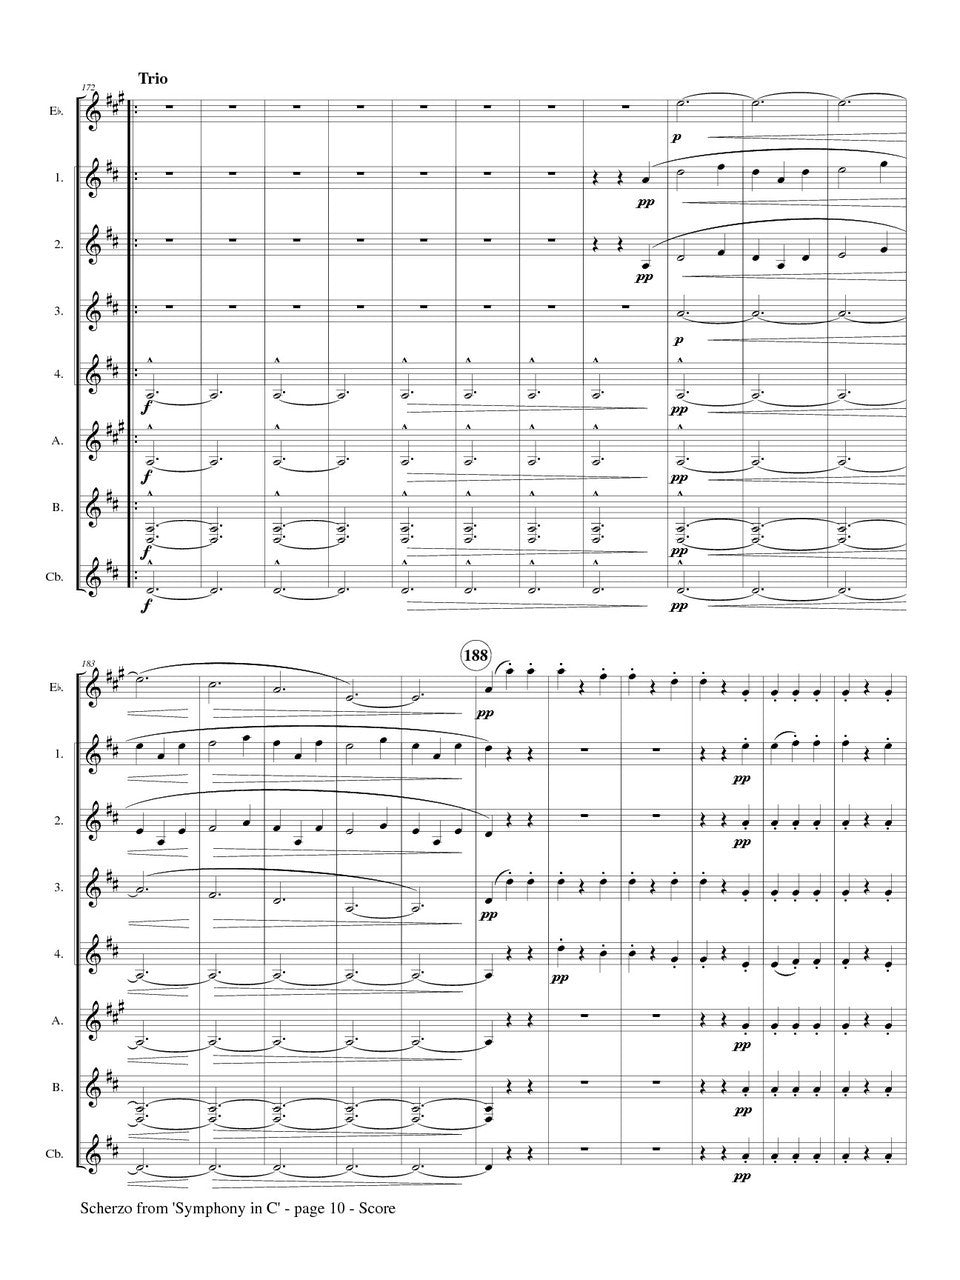 Bizet (arr. Matt Johnston) - Scherzo' from Symphony in C for Clarinet Choir